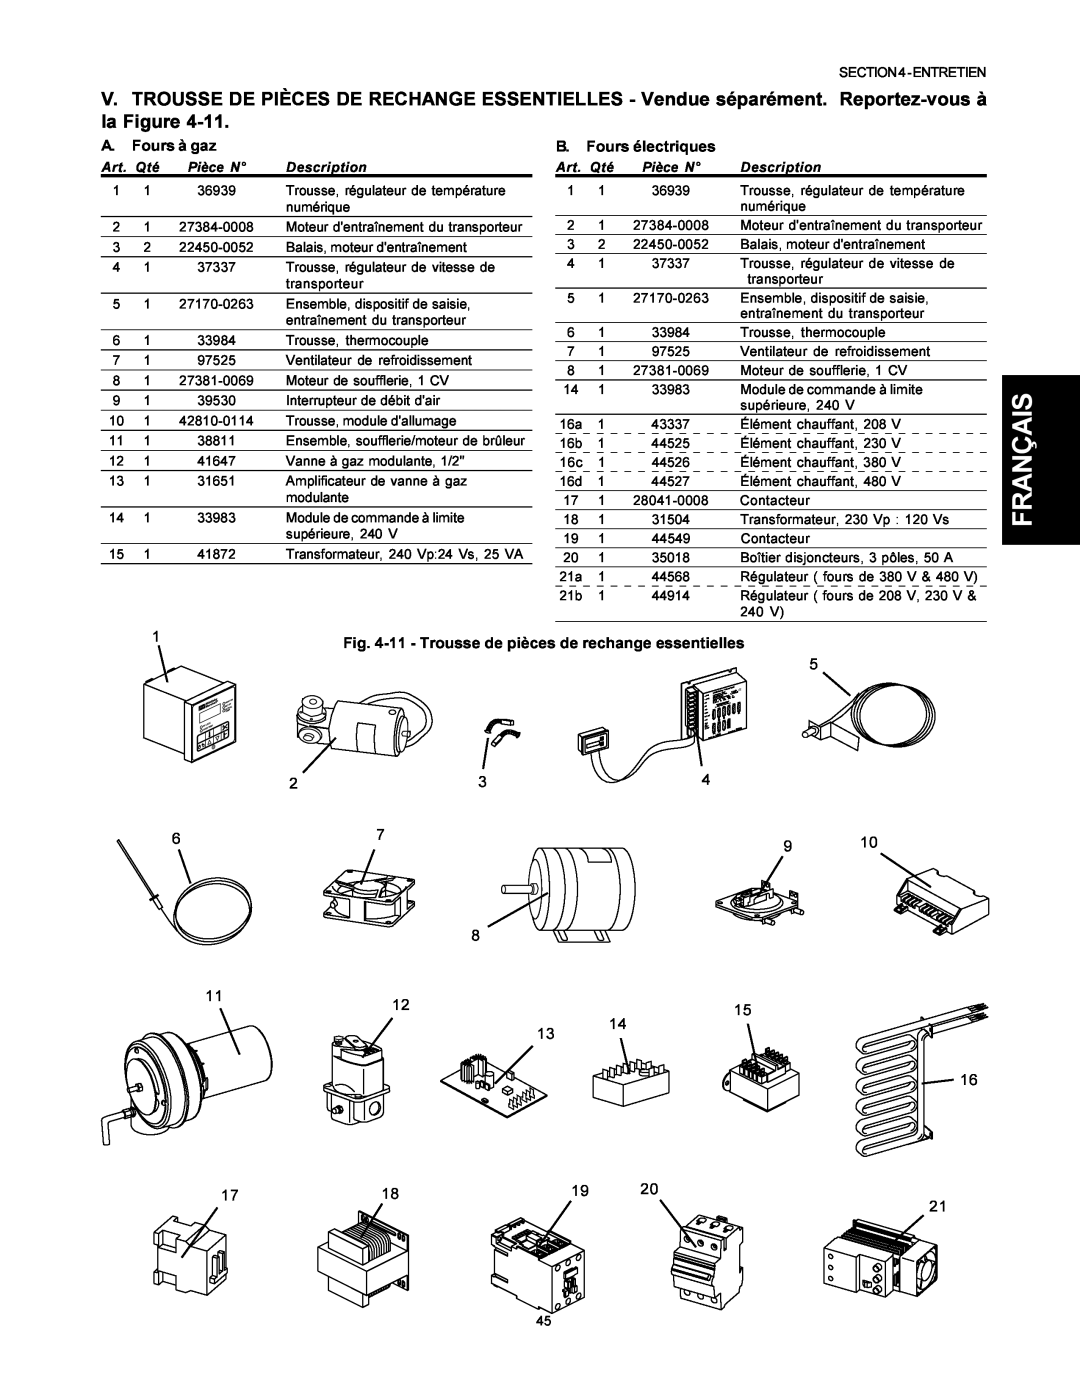 Middleby Marshall PS500 A. Fours à gaz, B. Fours électriques, Français, 11 - Trousse de pièces de rechange essentielles 